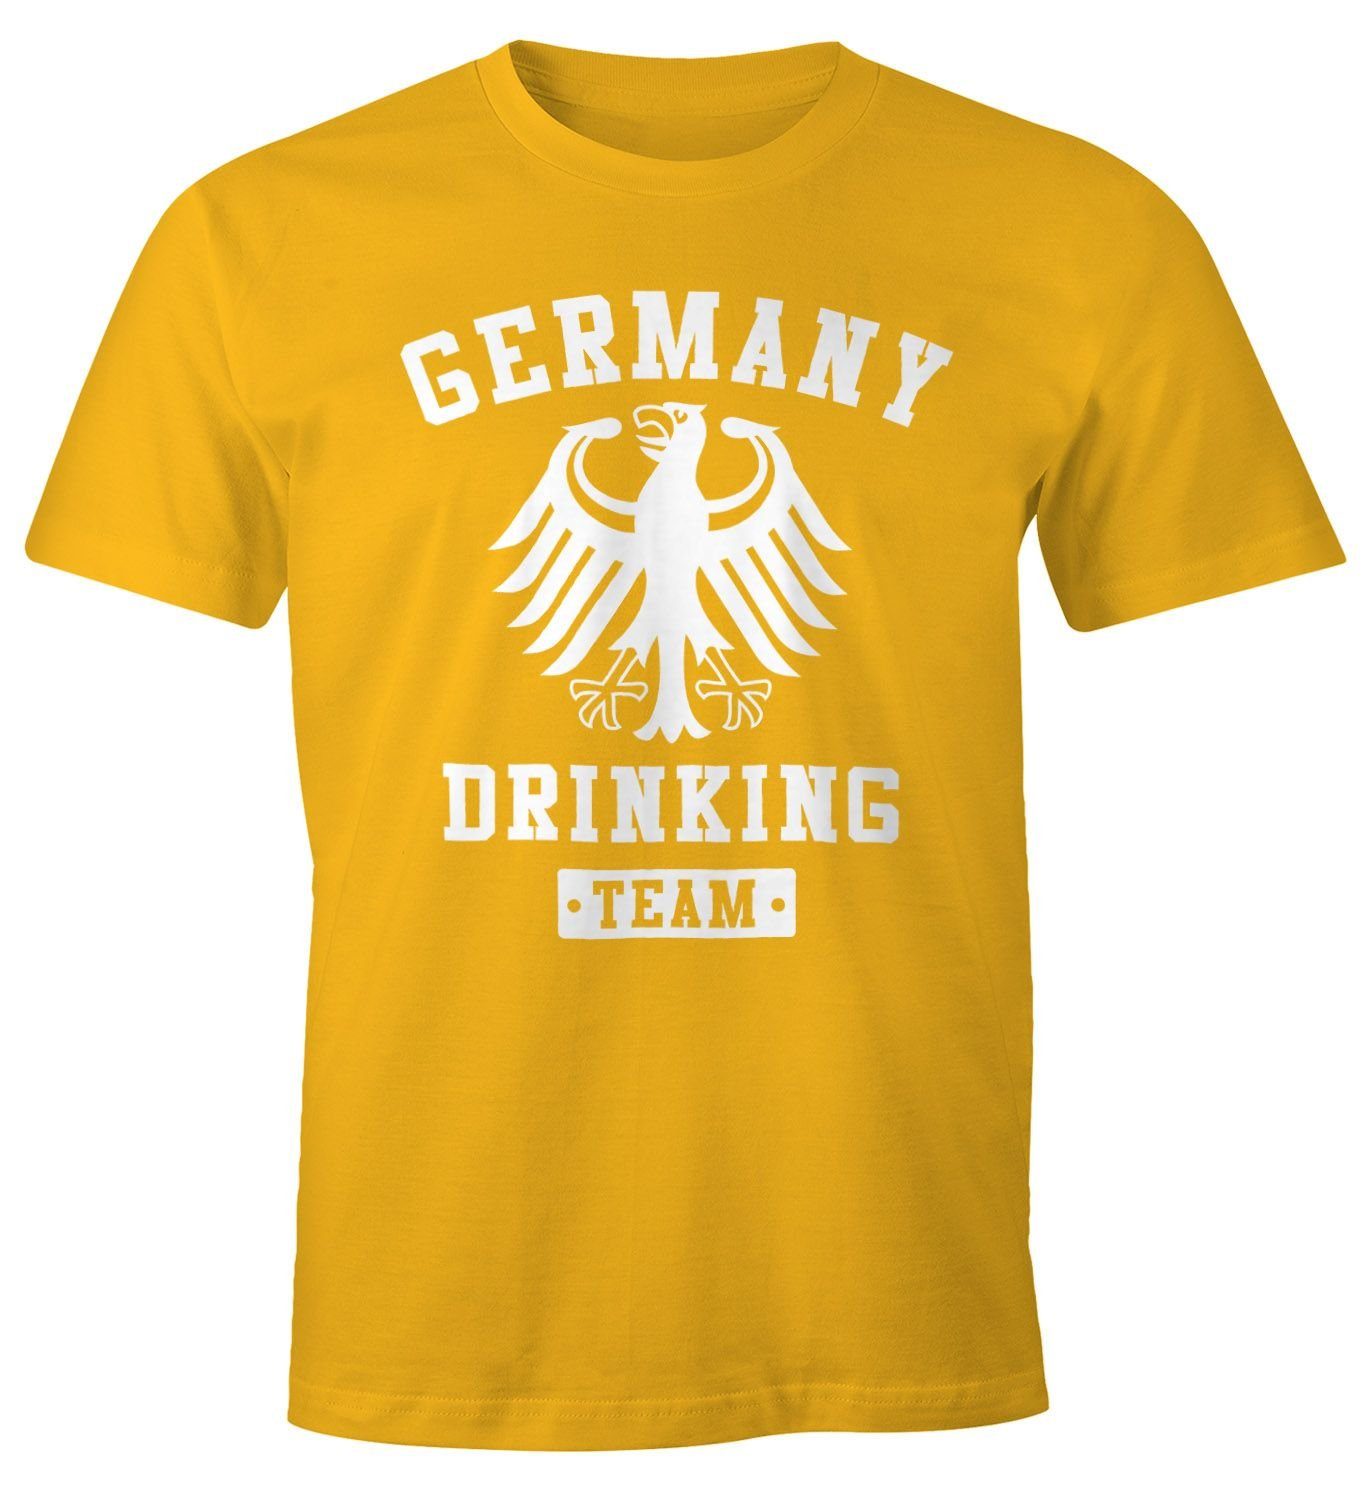 MoonWorks Print-Shirt Deutschland Herren T-Shirt Germany Drinking Team Bier Adler Fun-Shirt Moonworks® mit Print gelb